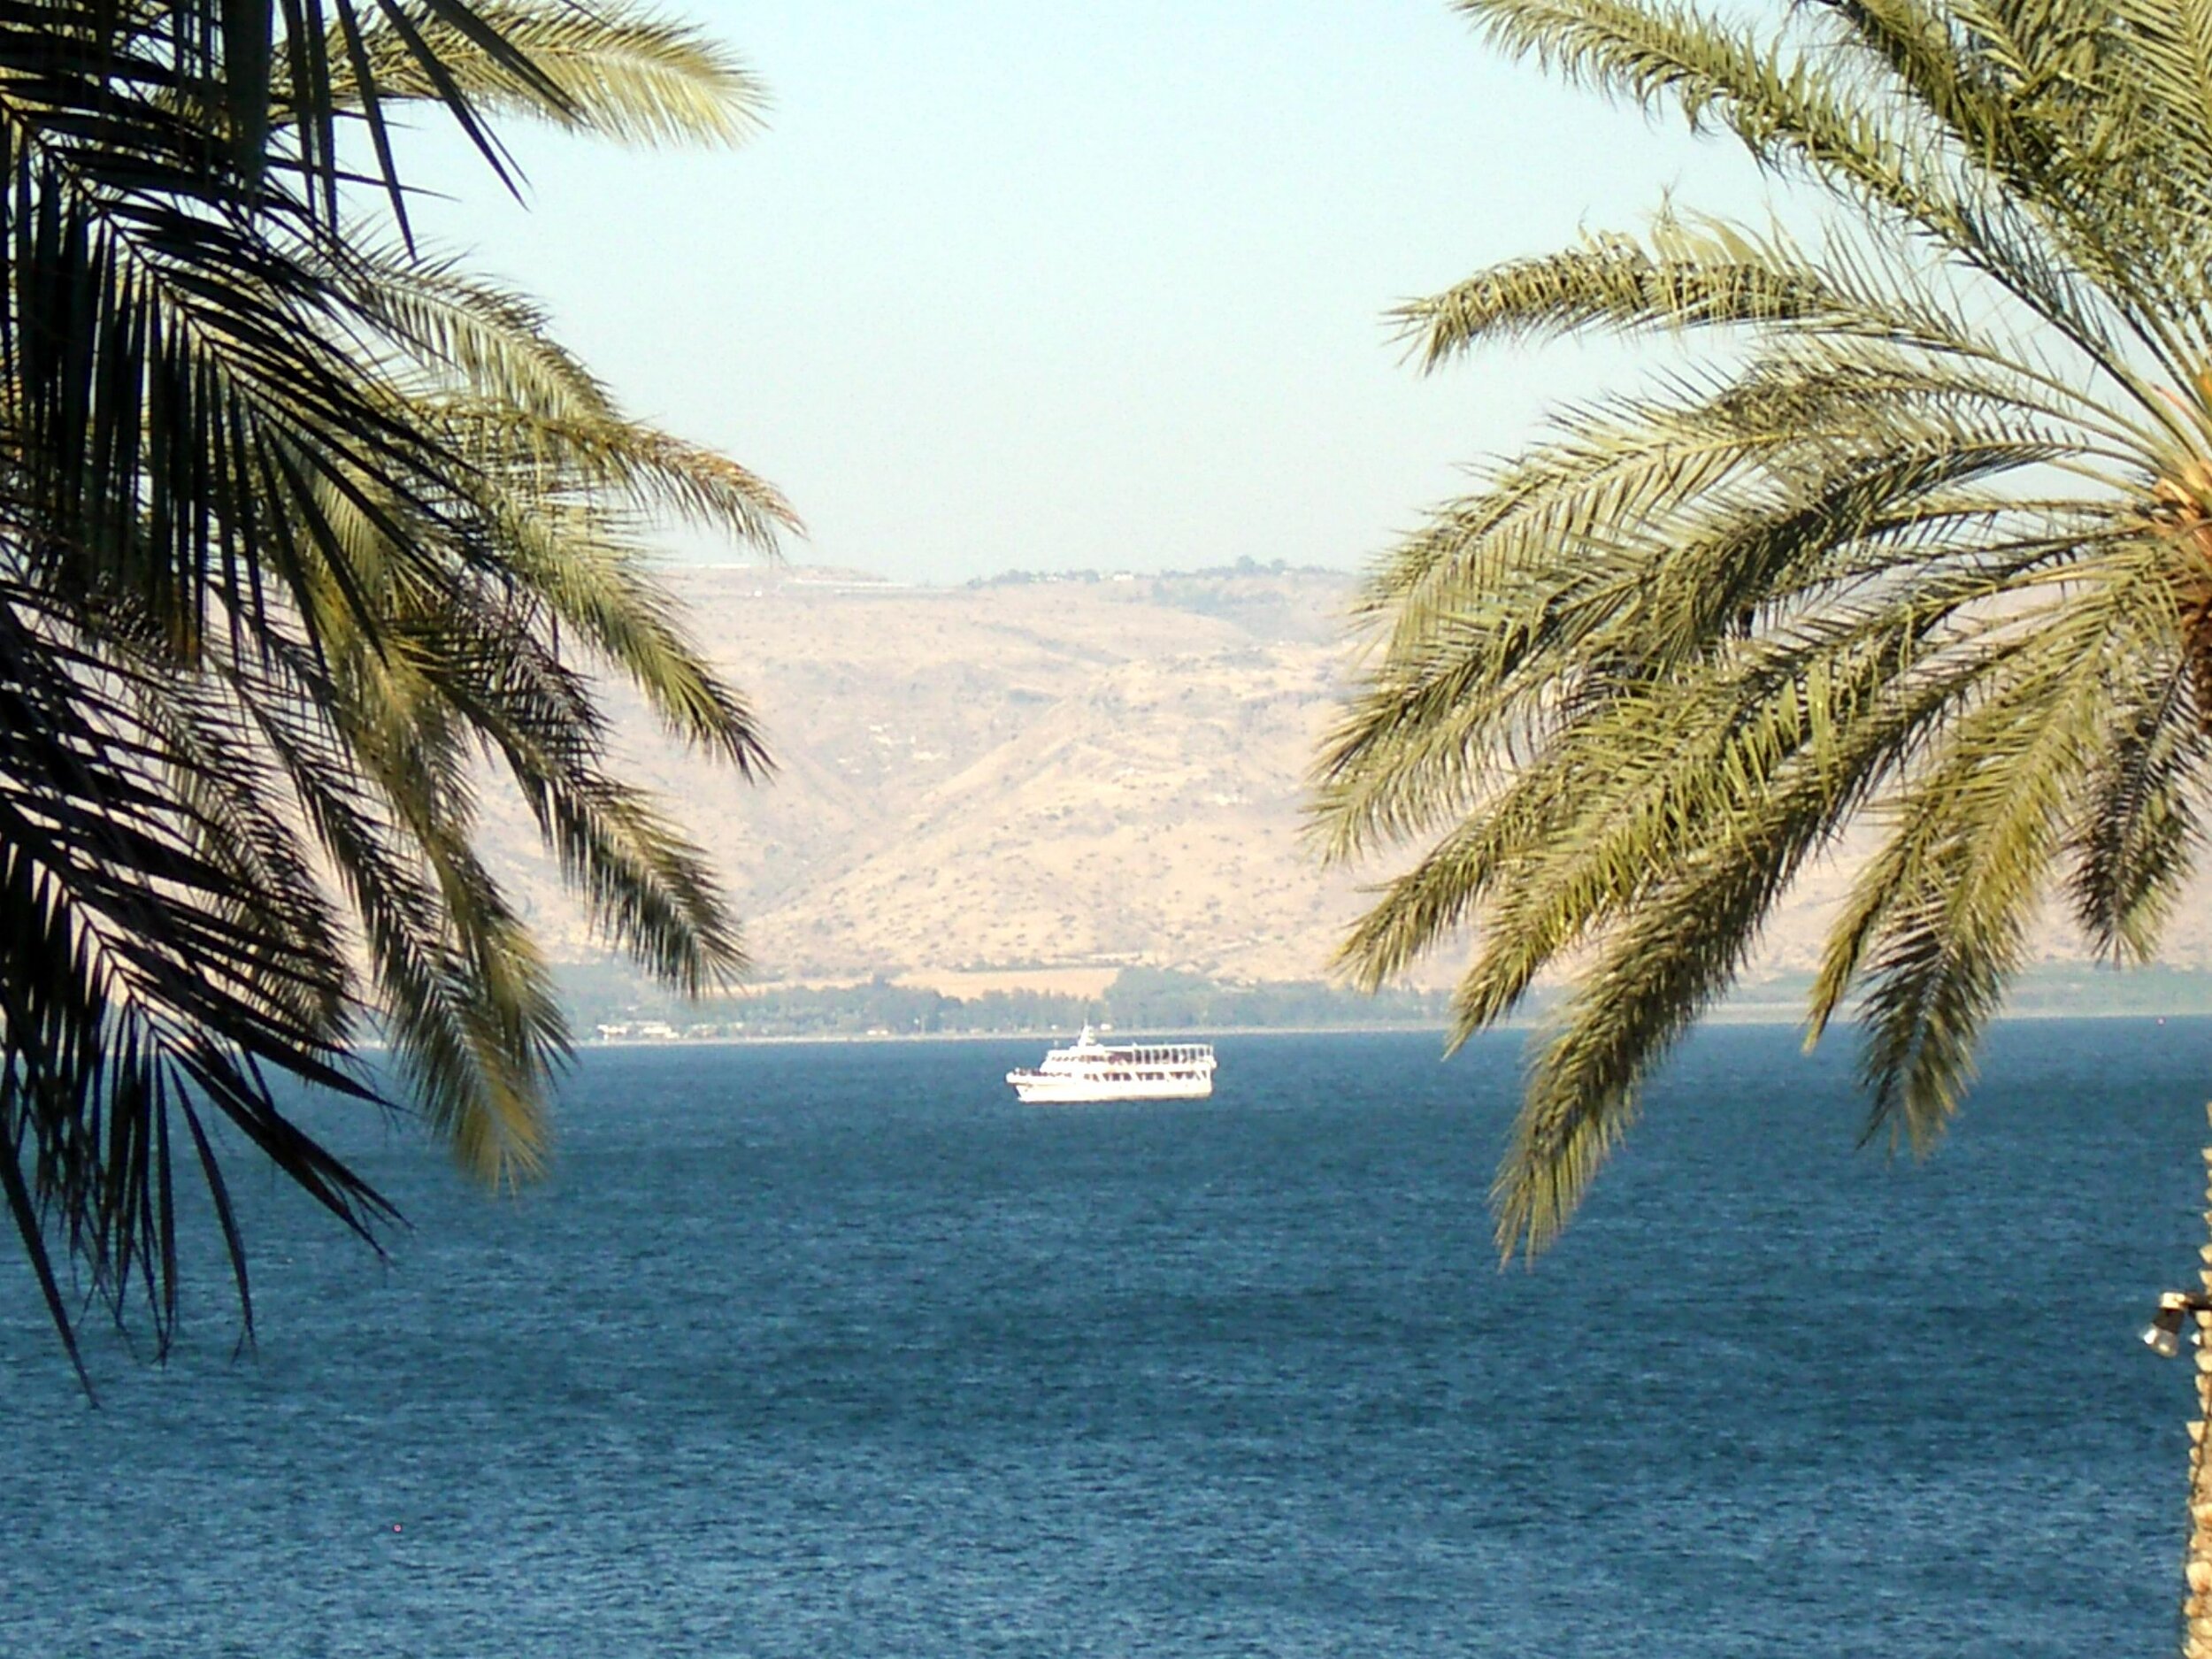 IMGP3037 Sea of Galilee.JPG